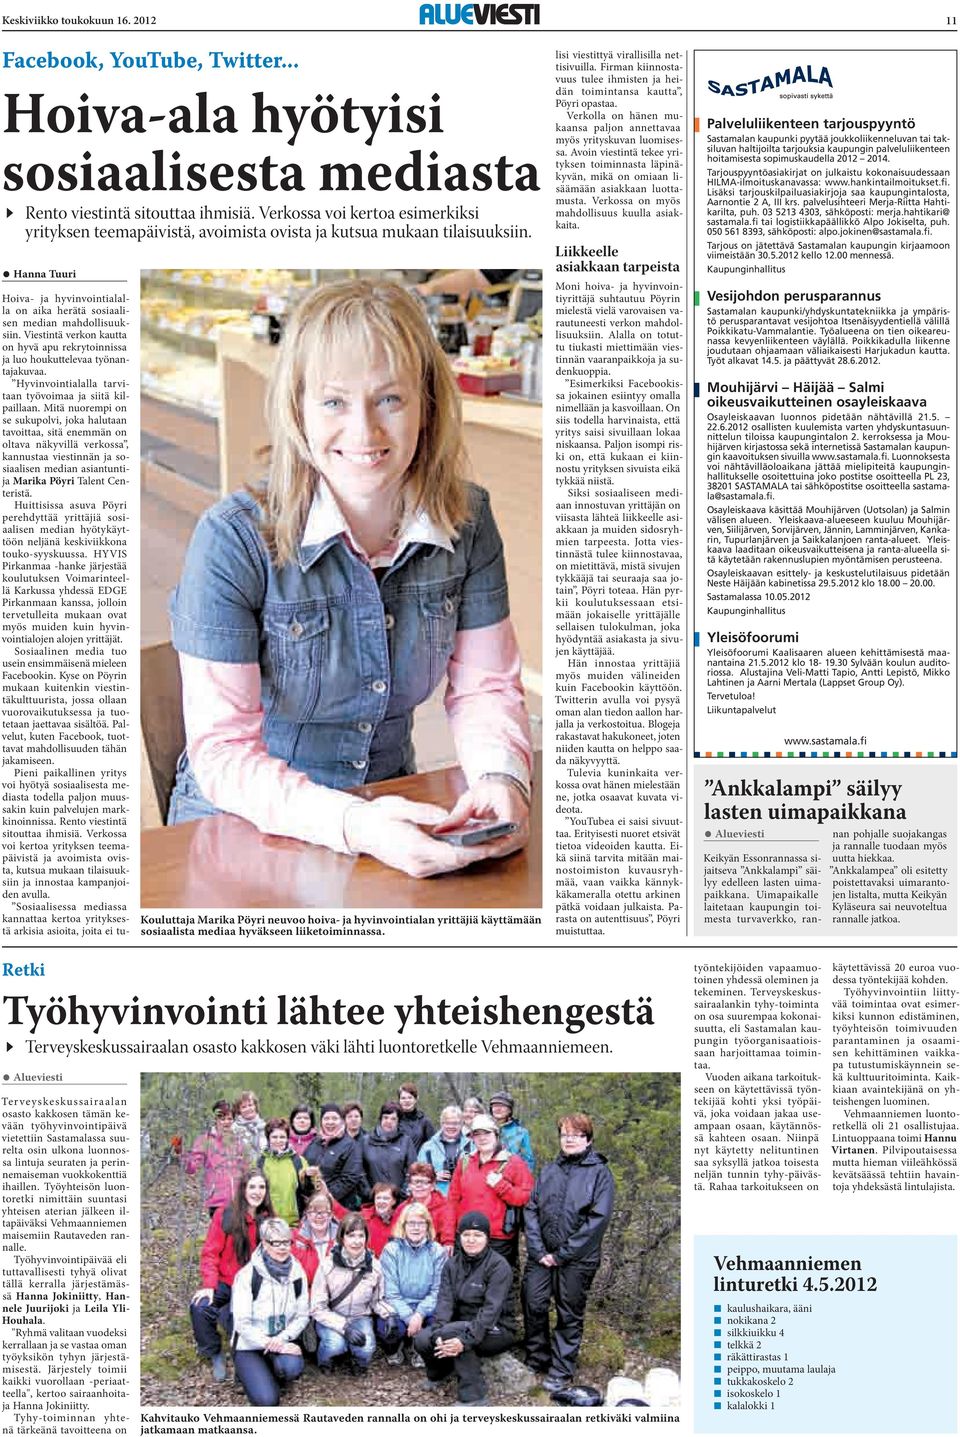 Hanna Tuuri Kouluttaja Marika Pöyri neuvoo hoiva- ja hyvinvointialan yrittäjiä käyttämään sosiaalista mediaa hyväkseen liiketoiminnassa.